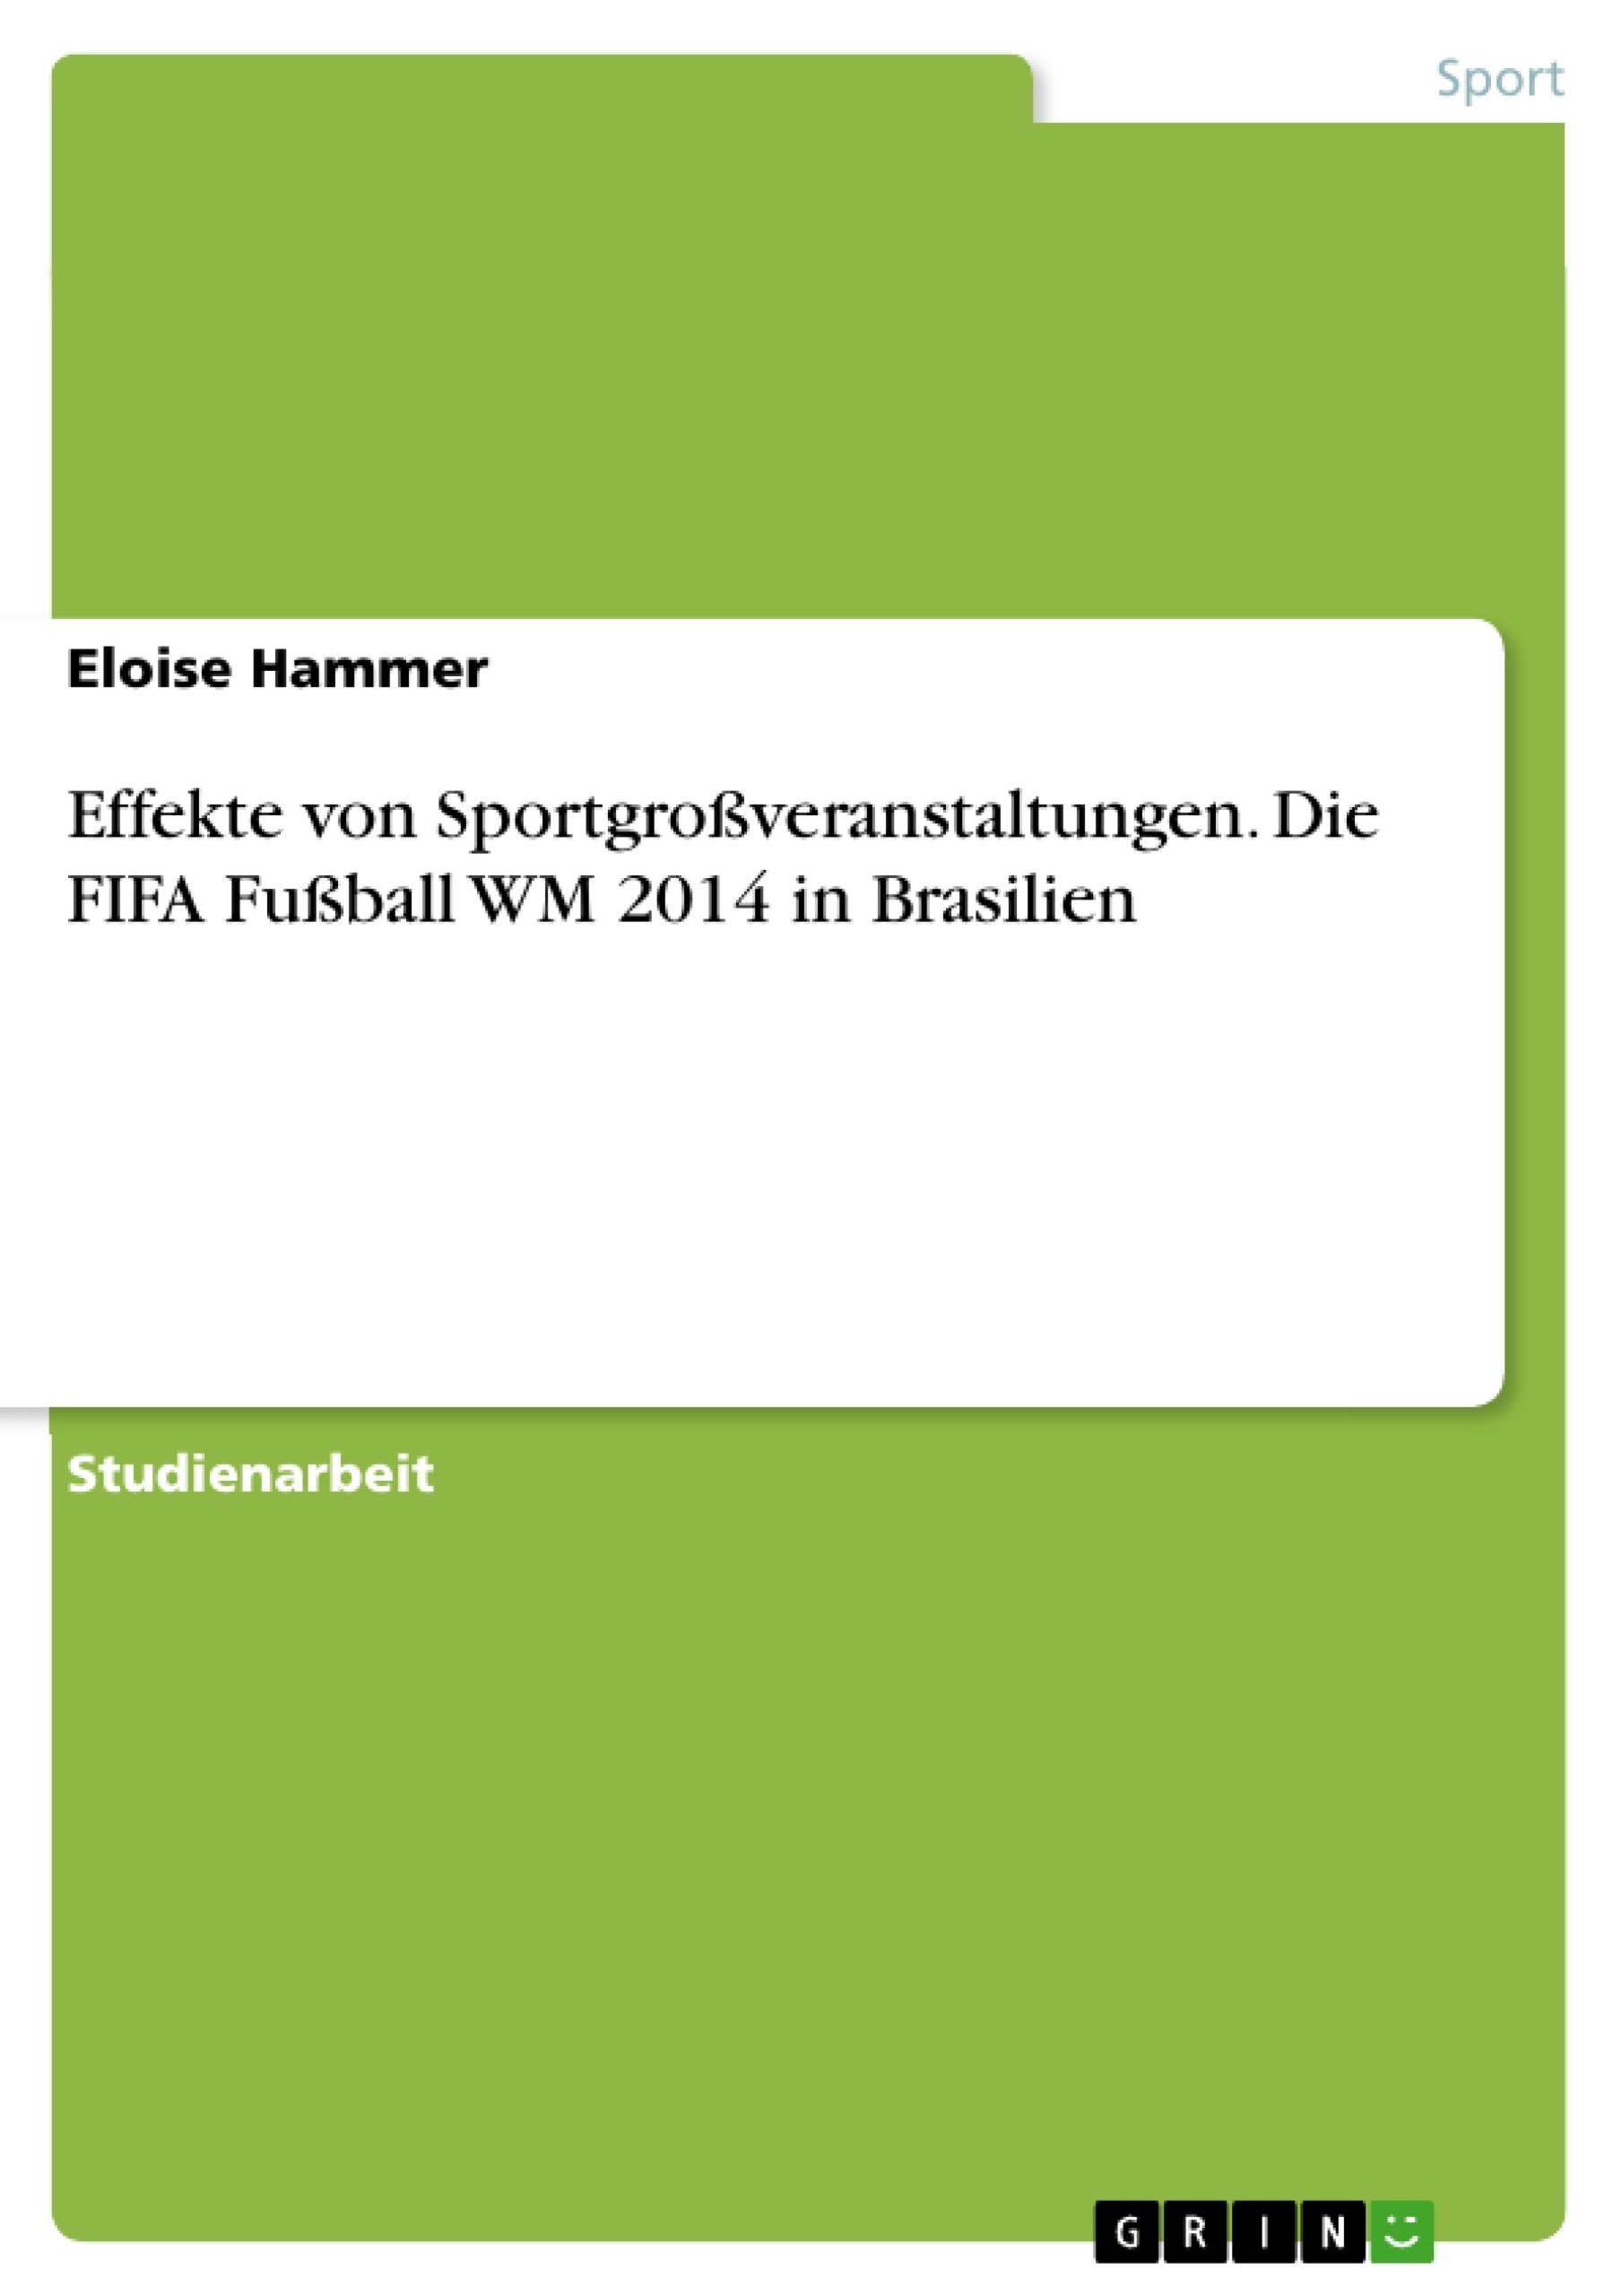 Title: Effekte von Sportgroßveranstaltungen. Die FIFA Fußball WM 2014 in Brasilien